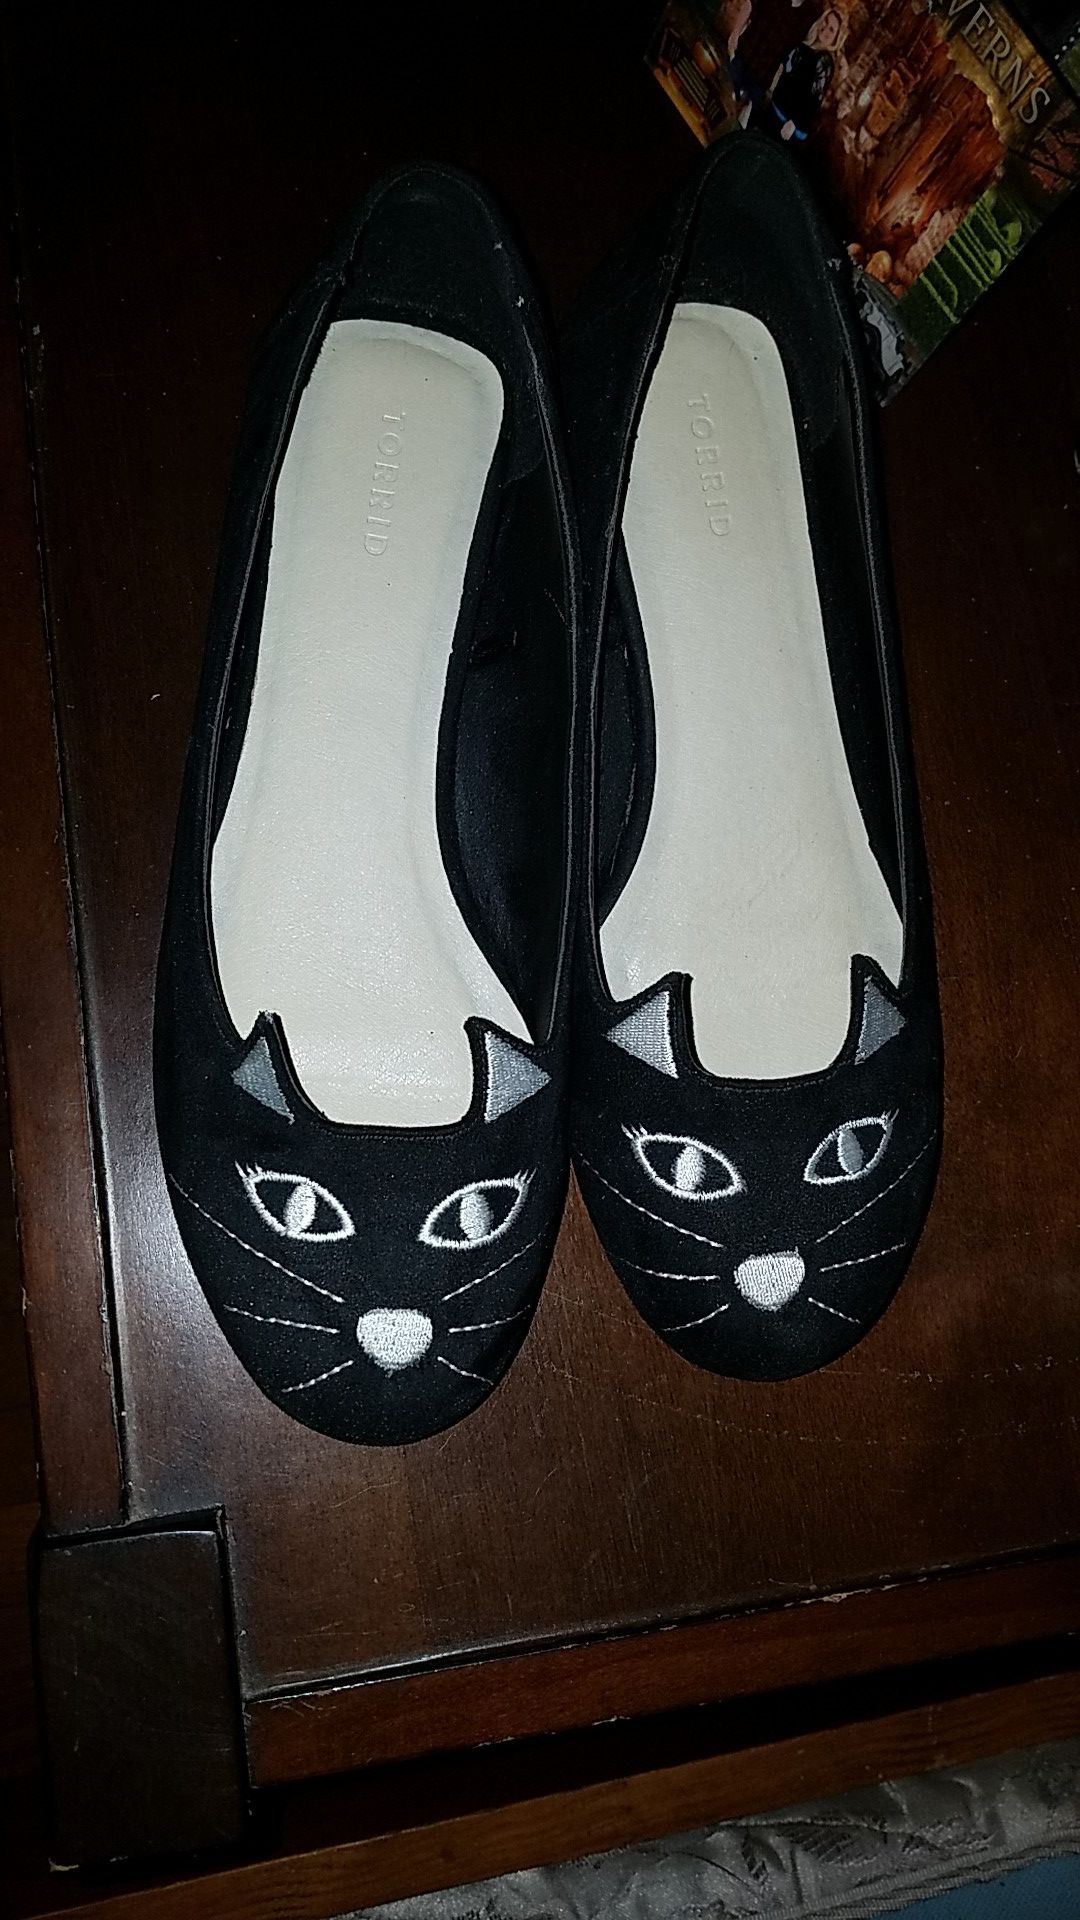 Cat shoes